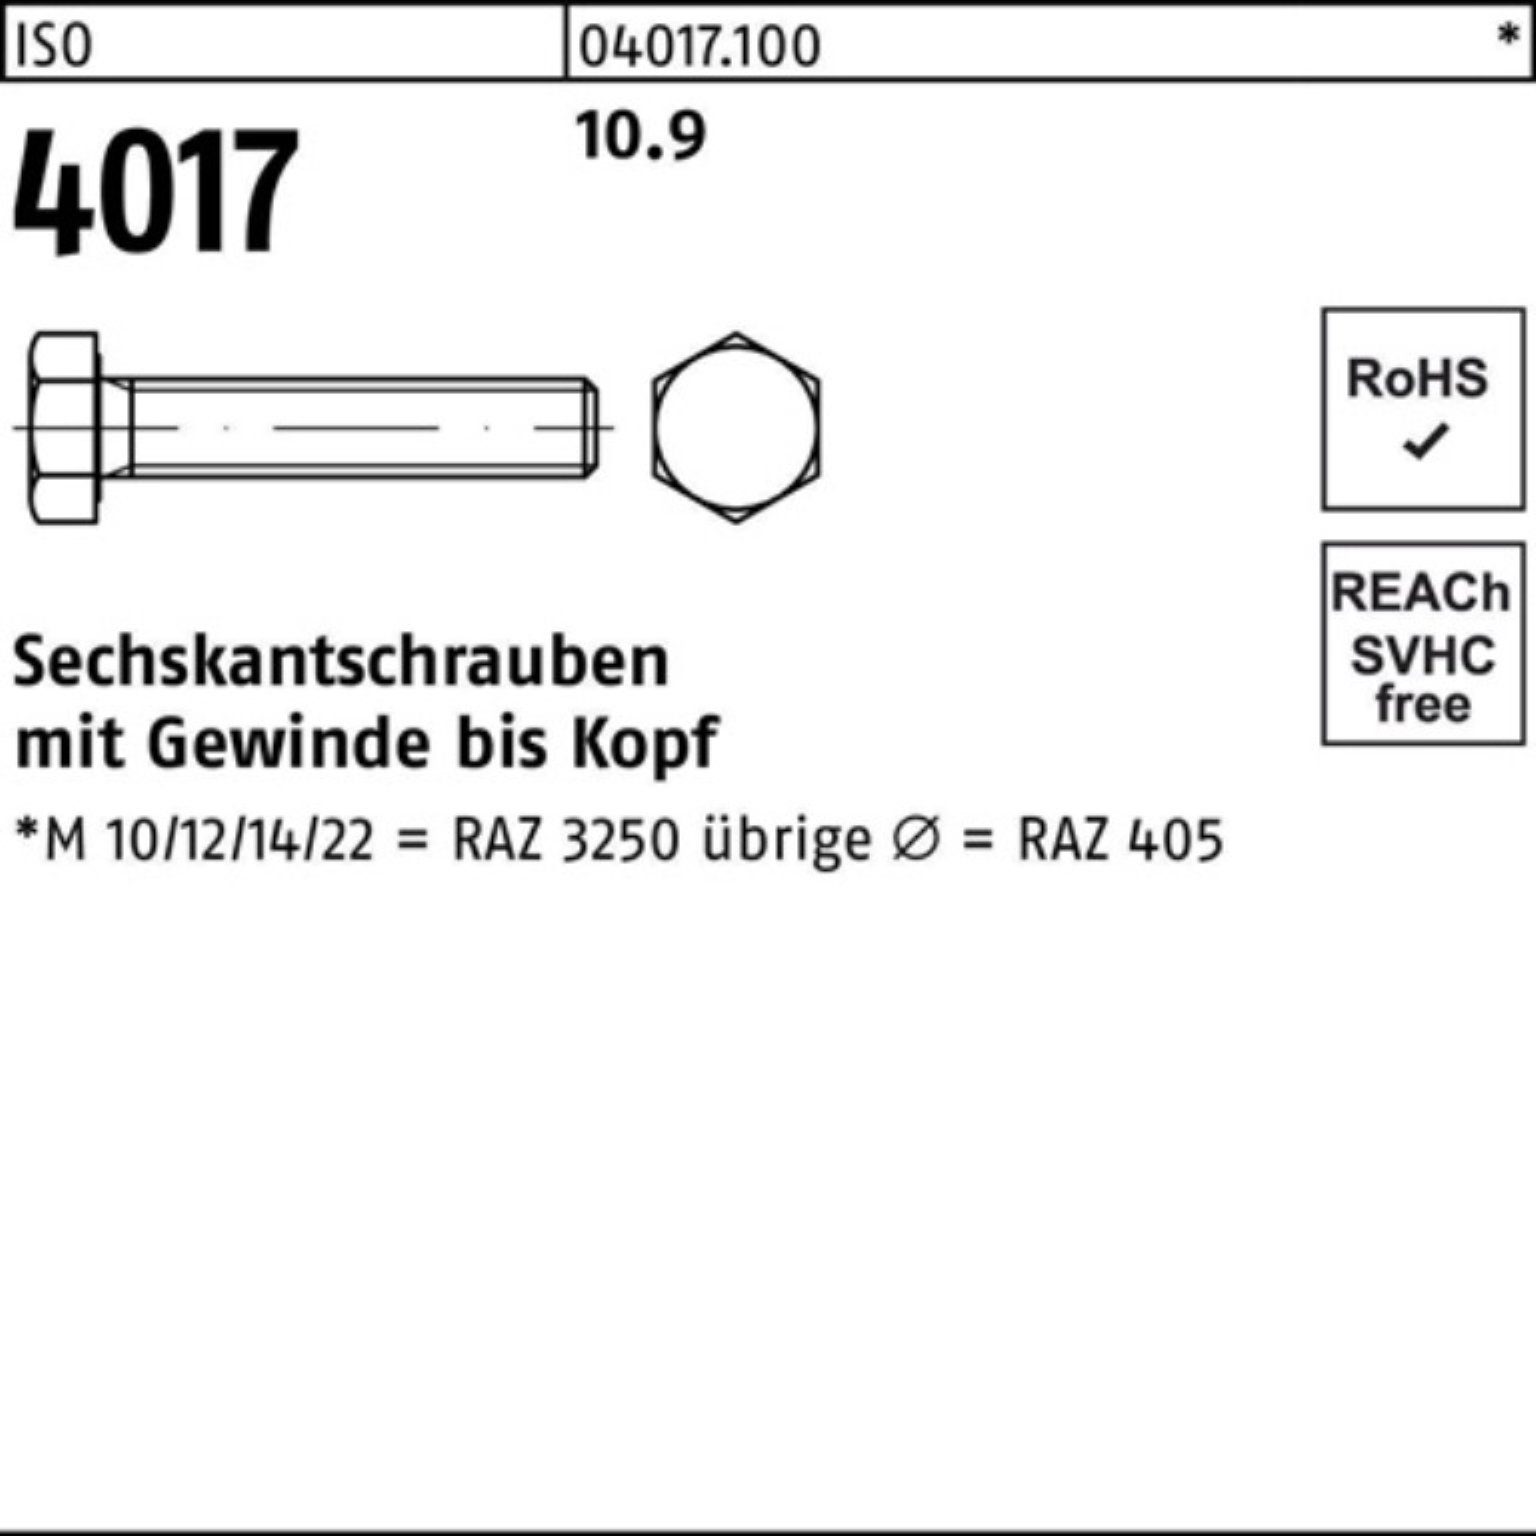 Bufab Sechskantschraube 100er VG 180 40 ISO Pack Sechskantschraube Stück M24x 10.9 1 4017 ISO